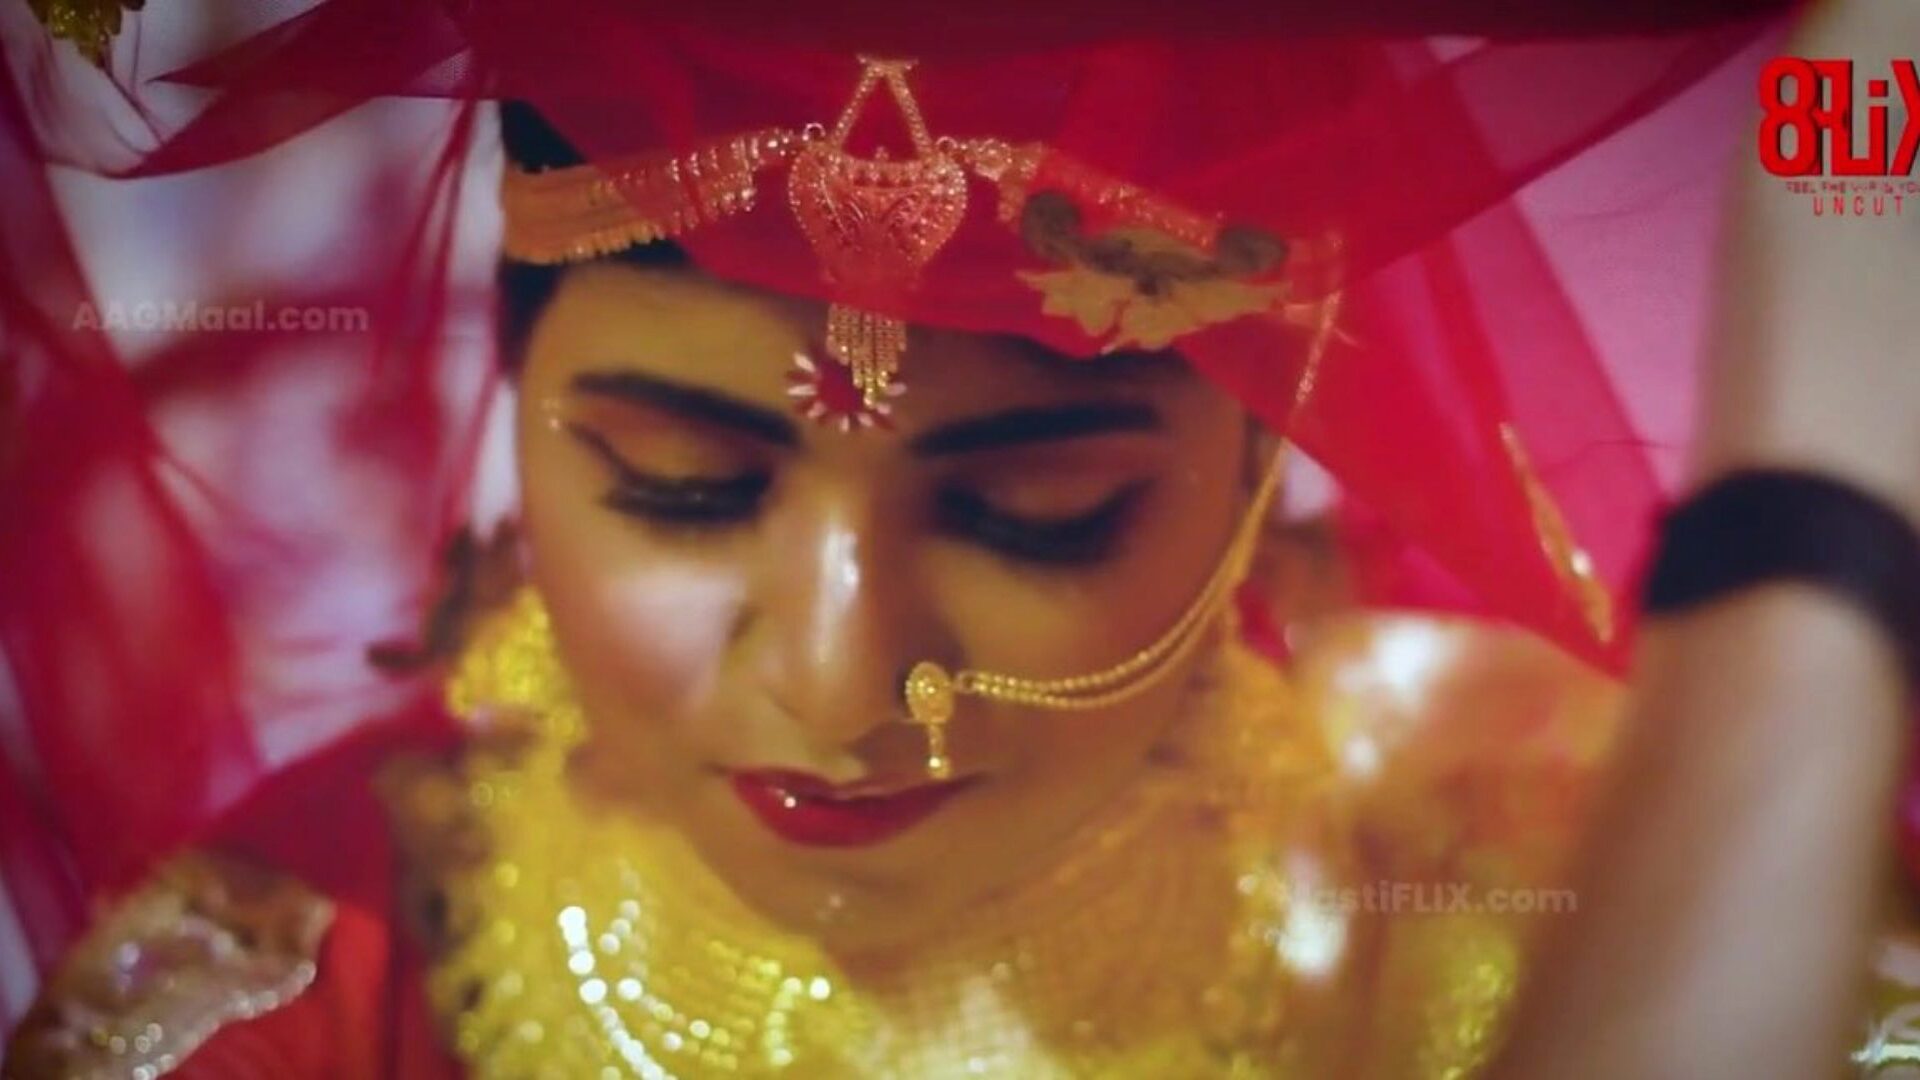 bebo wedding uncut - il livello successivo delle serie web indiane